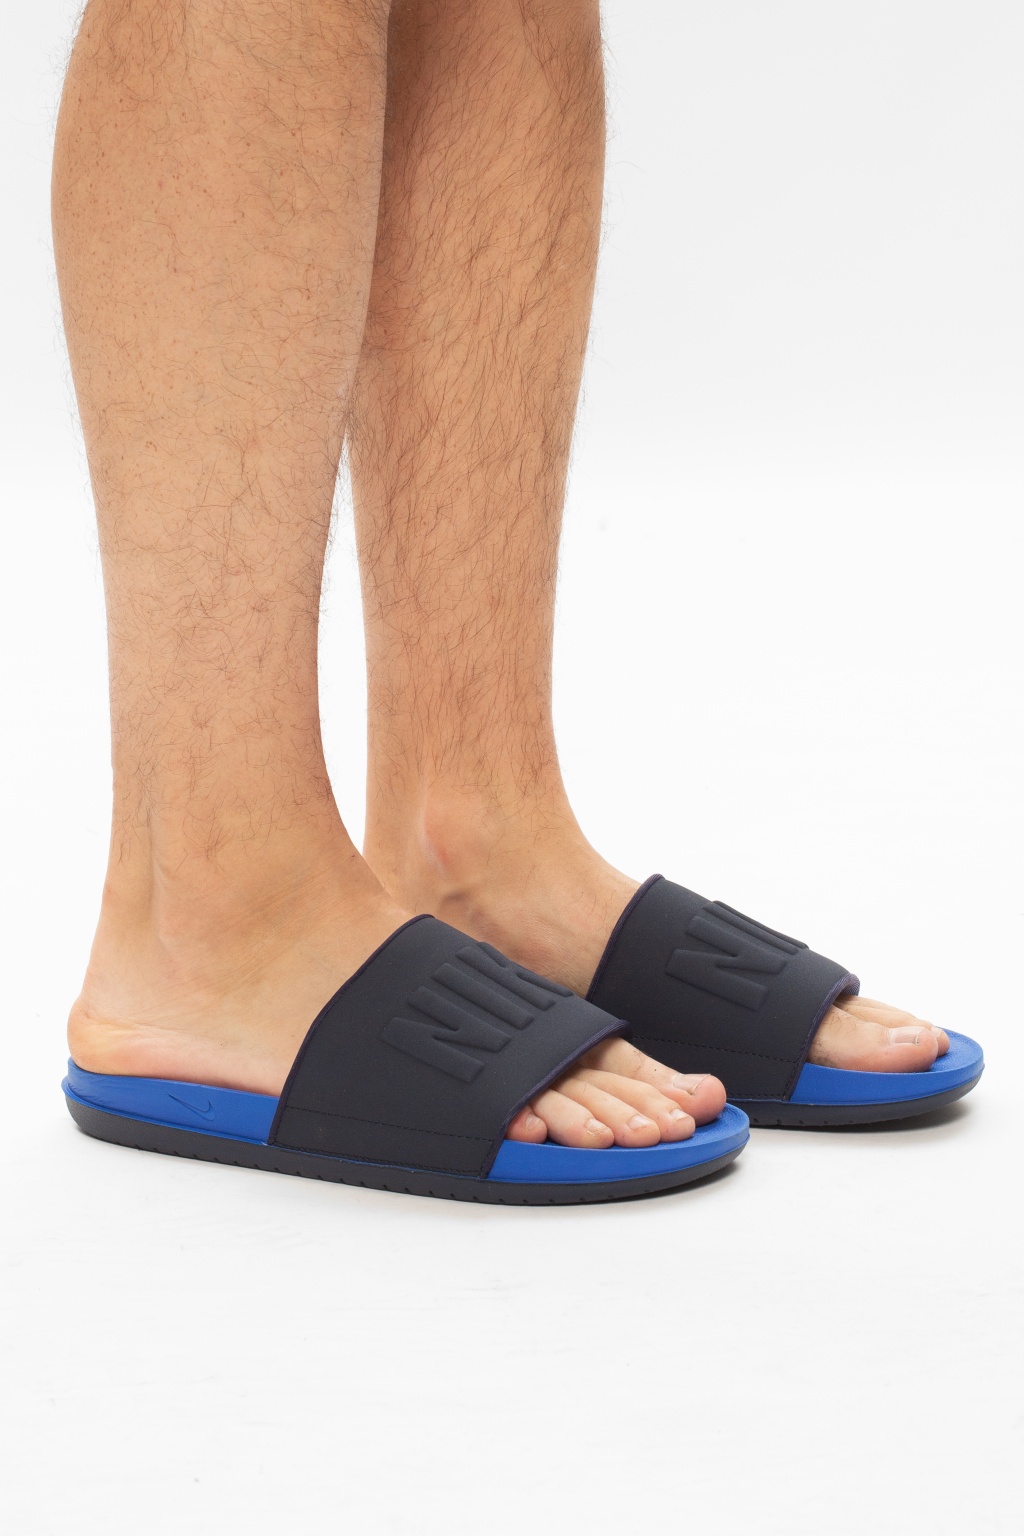 nike men's offcourt slide sandals